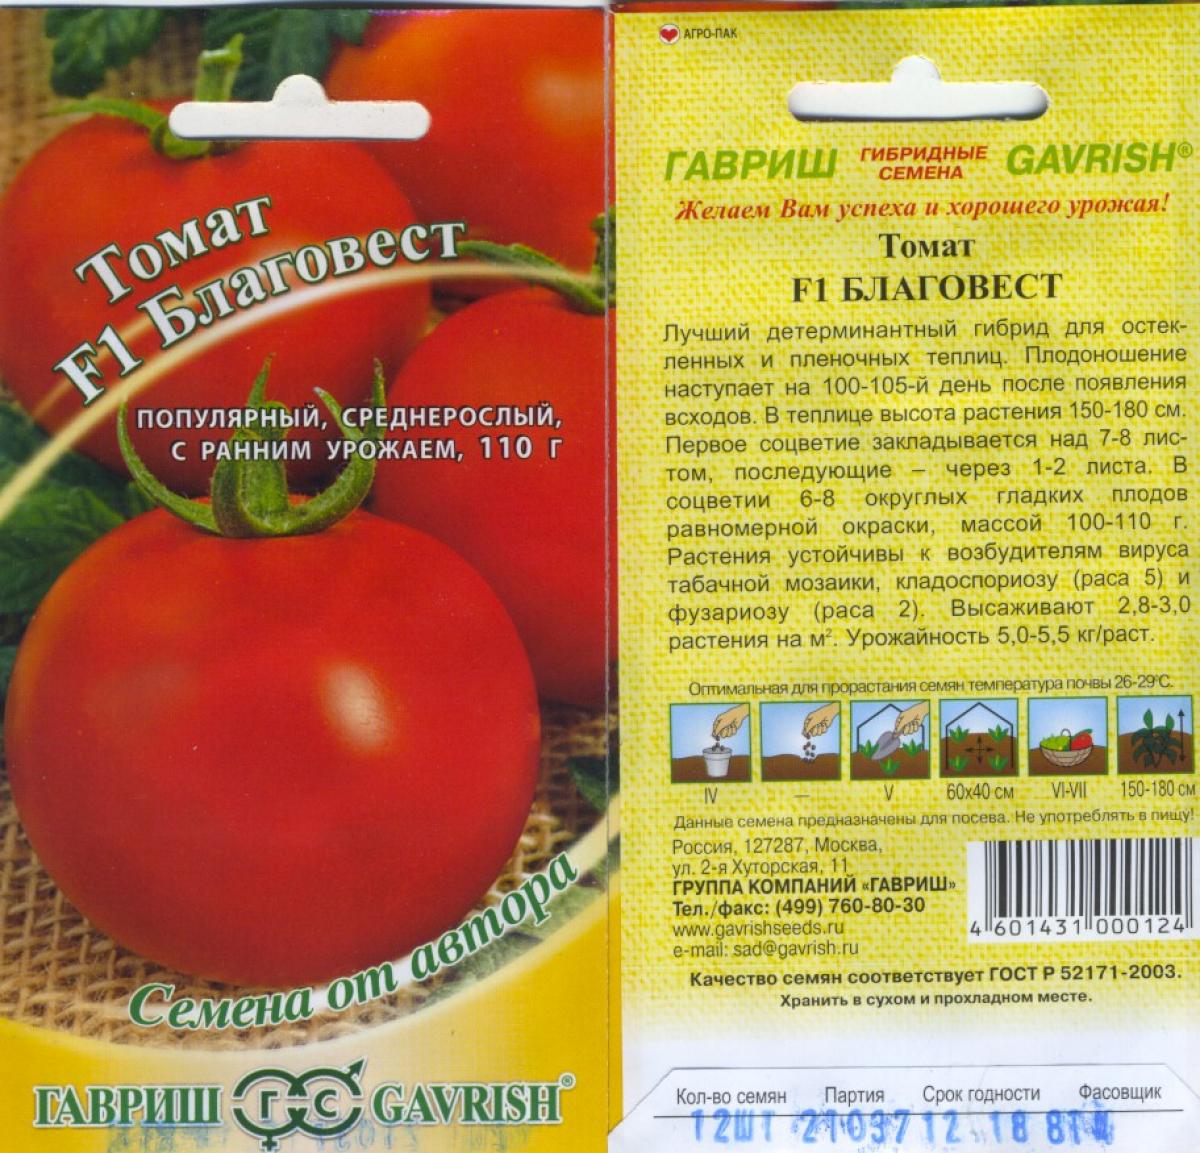 Томат «о-ля-ля-ля»: описание сорта, фото и основные характеристики помидоры русский фермер